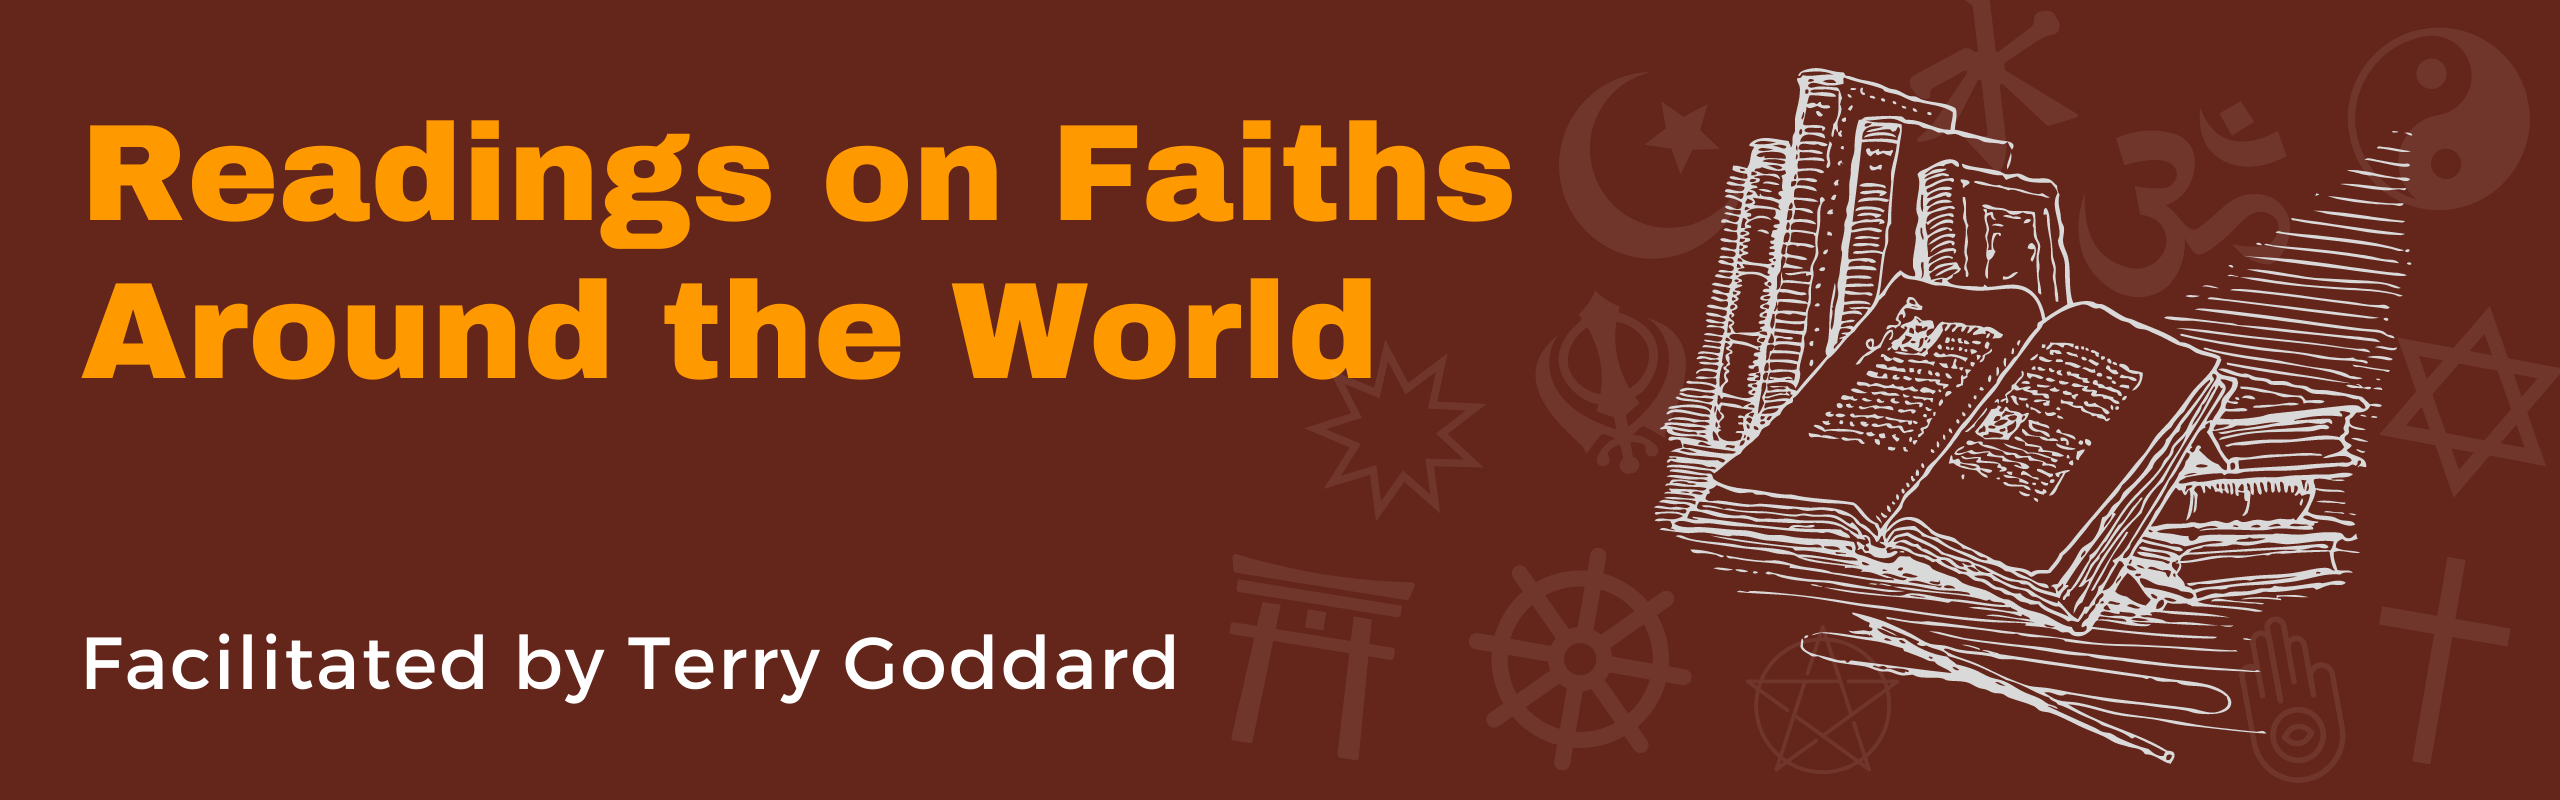 Readings on Faiths Around the World - header - 2560x800